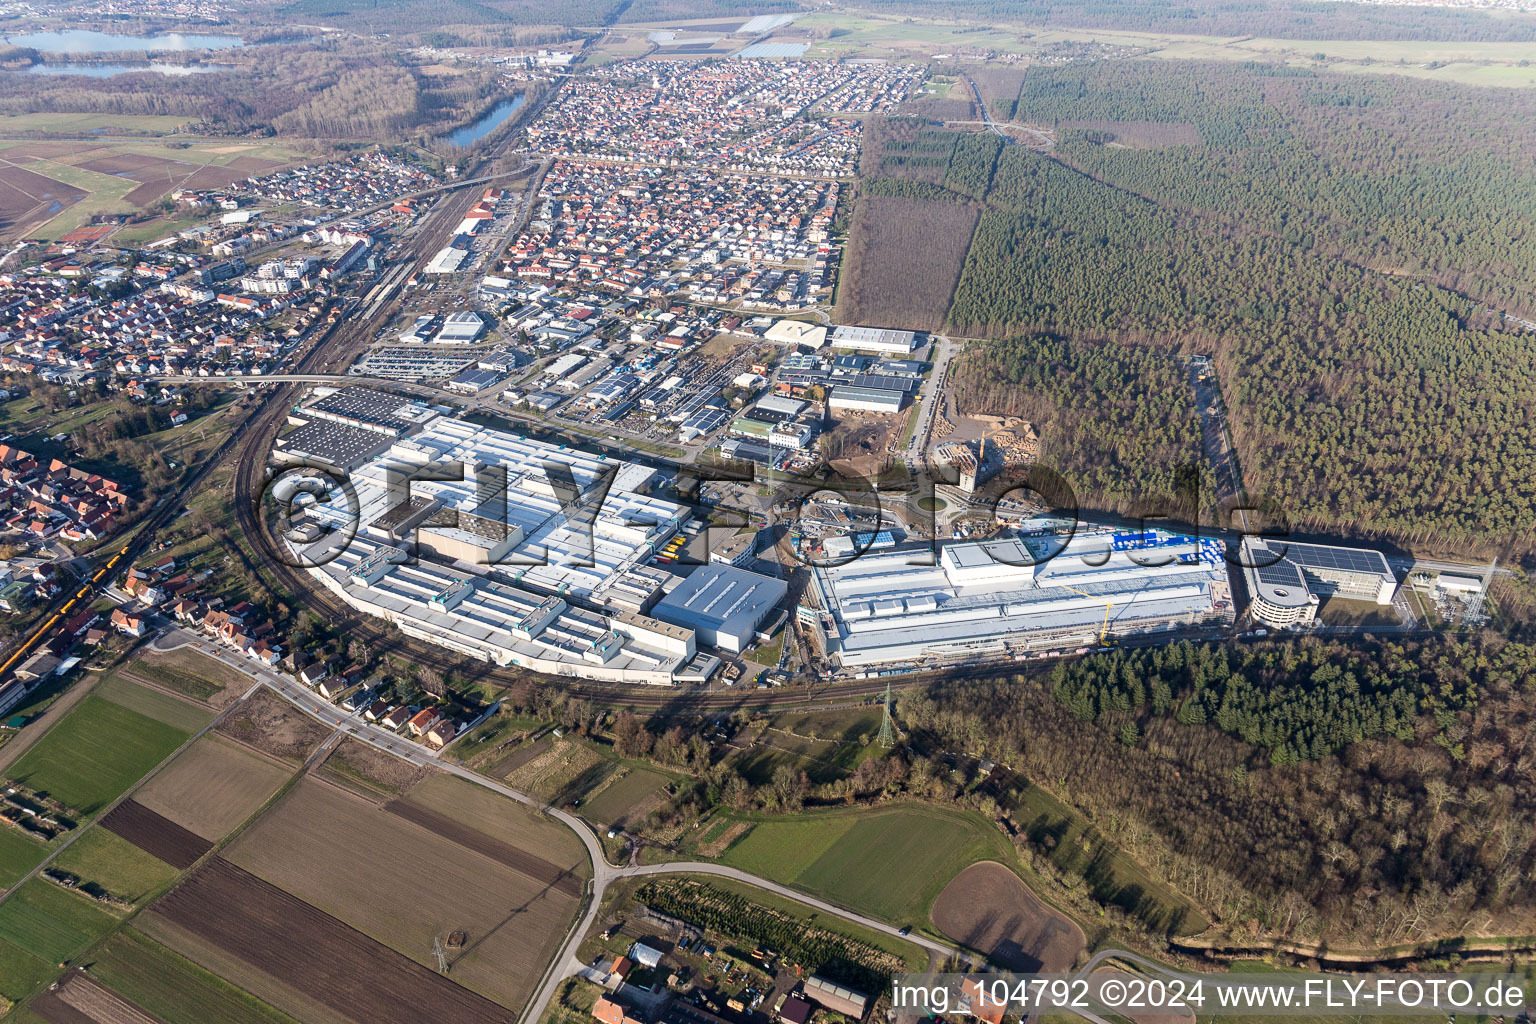 Agrandissement - nouveau bâtiment - chantier des bâtiments et halls de production de l'usine SEW-EURODRIVE GmbH & Co KG à le quartier Graben in Graben-Neudorf dans le département Bade-Wurtemberg, Allemagne vue d'en haut